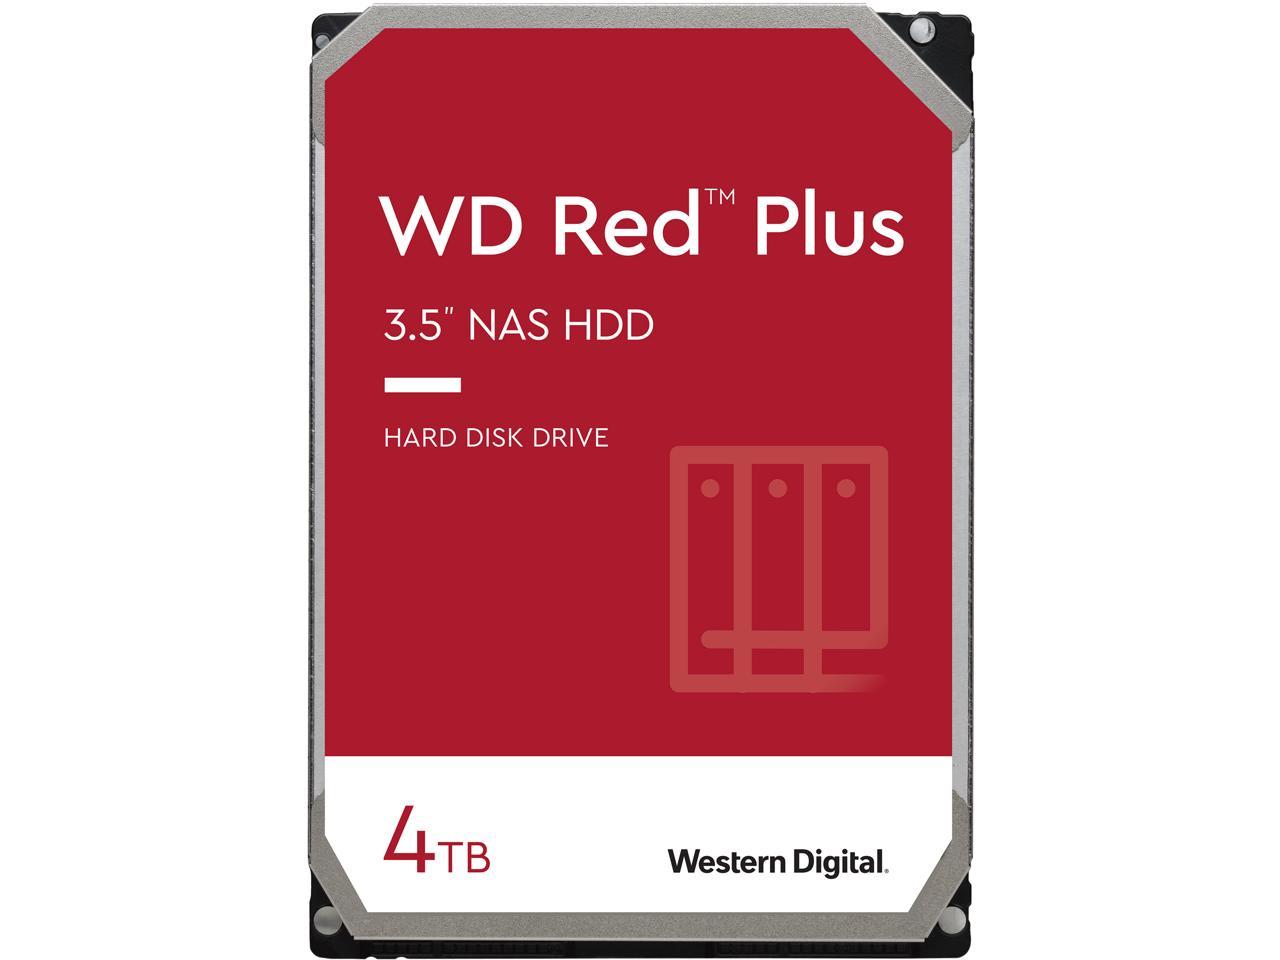 WD Red Plus 5400RPM SATA Internal Hard Drive - 4TB